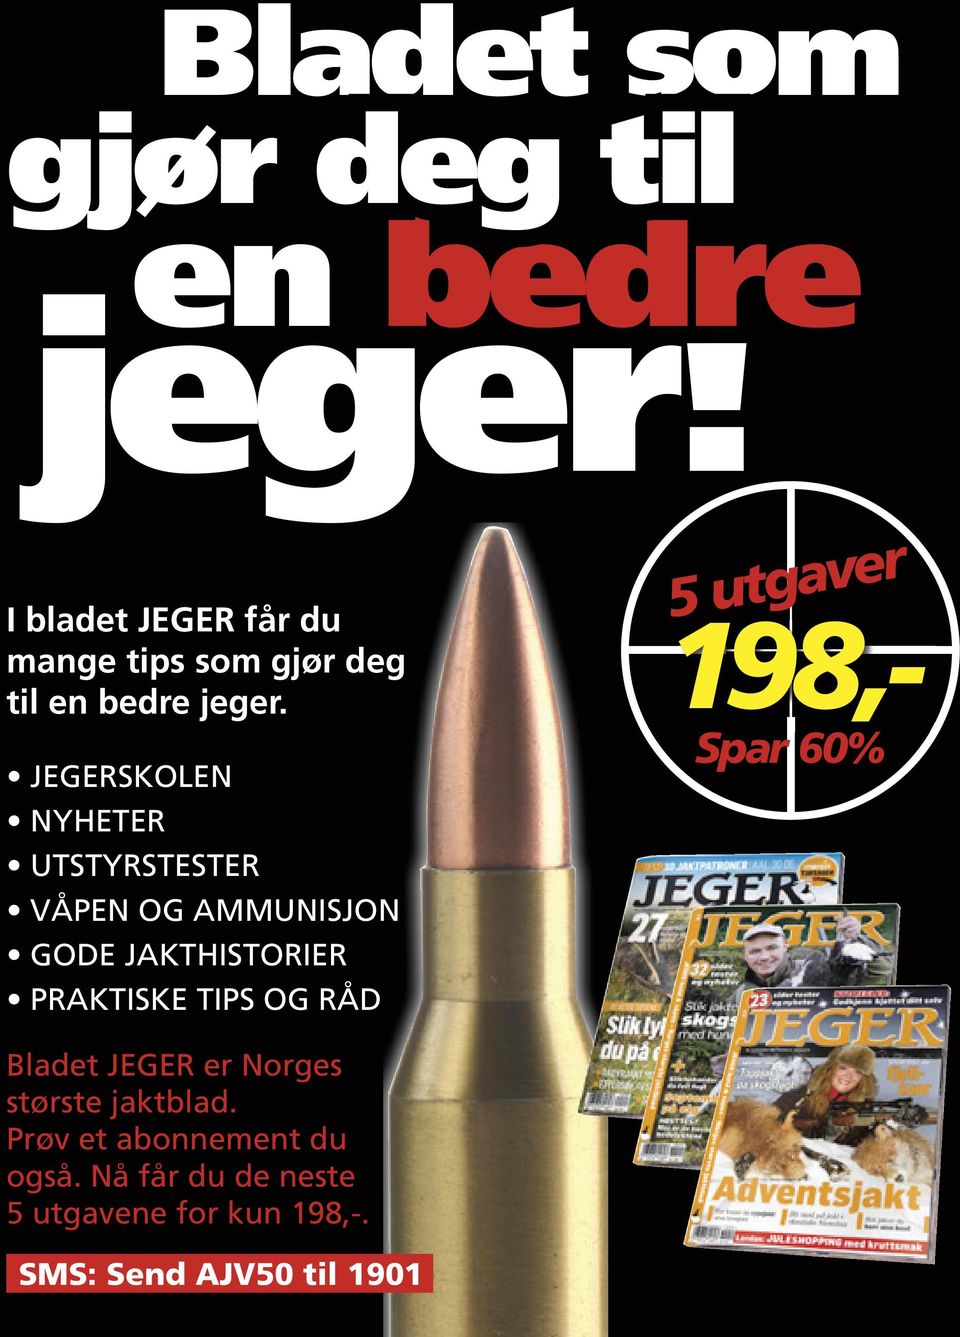 JEGER er Norges største jaktblad. Prøv et abonnement du også. Nå får du de neste 5 utgavene for kun 198,-.